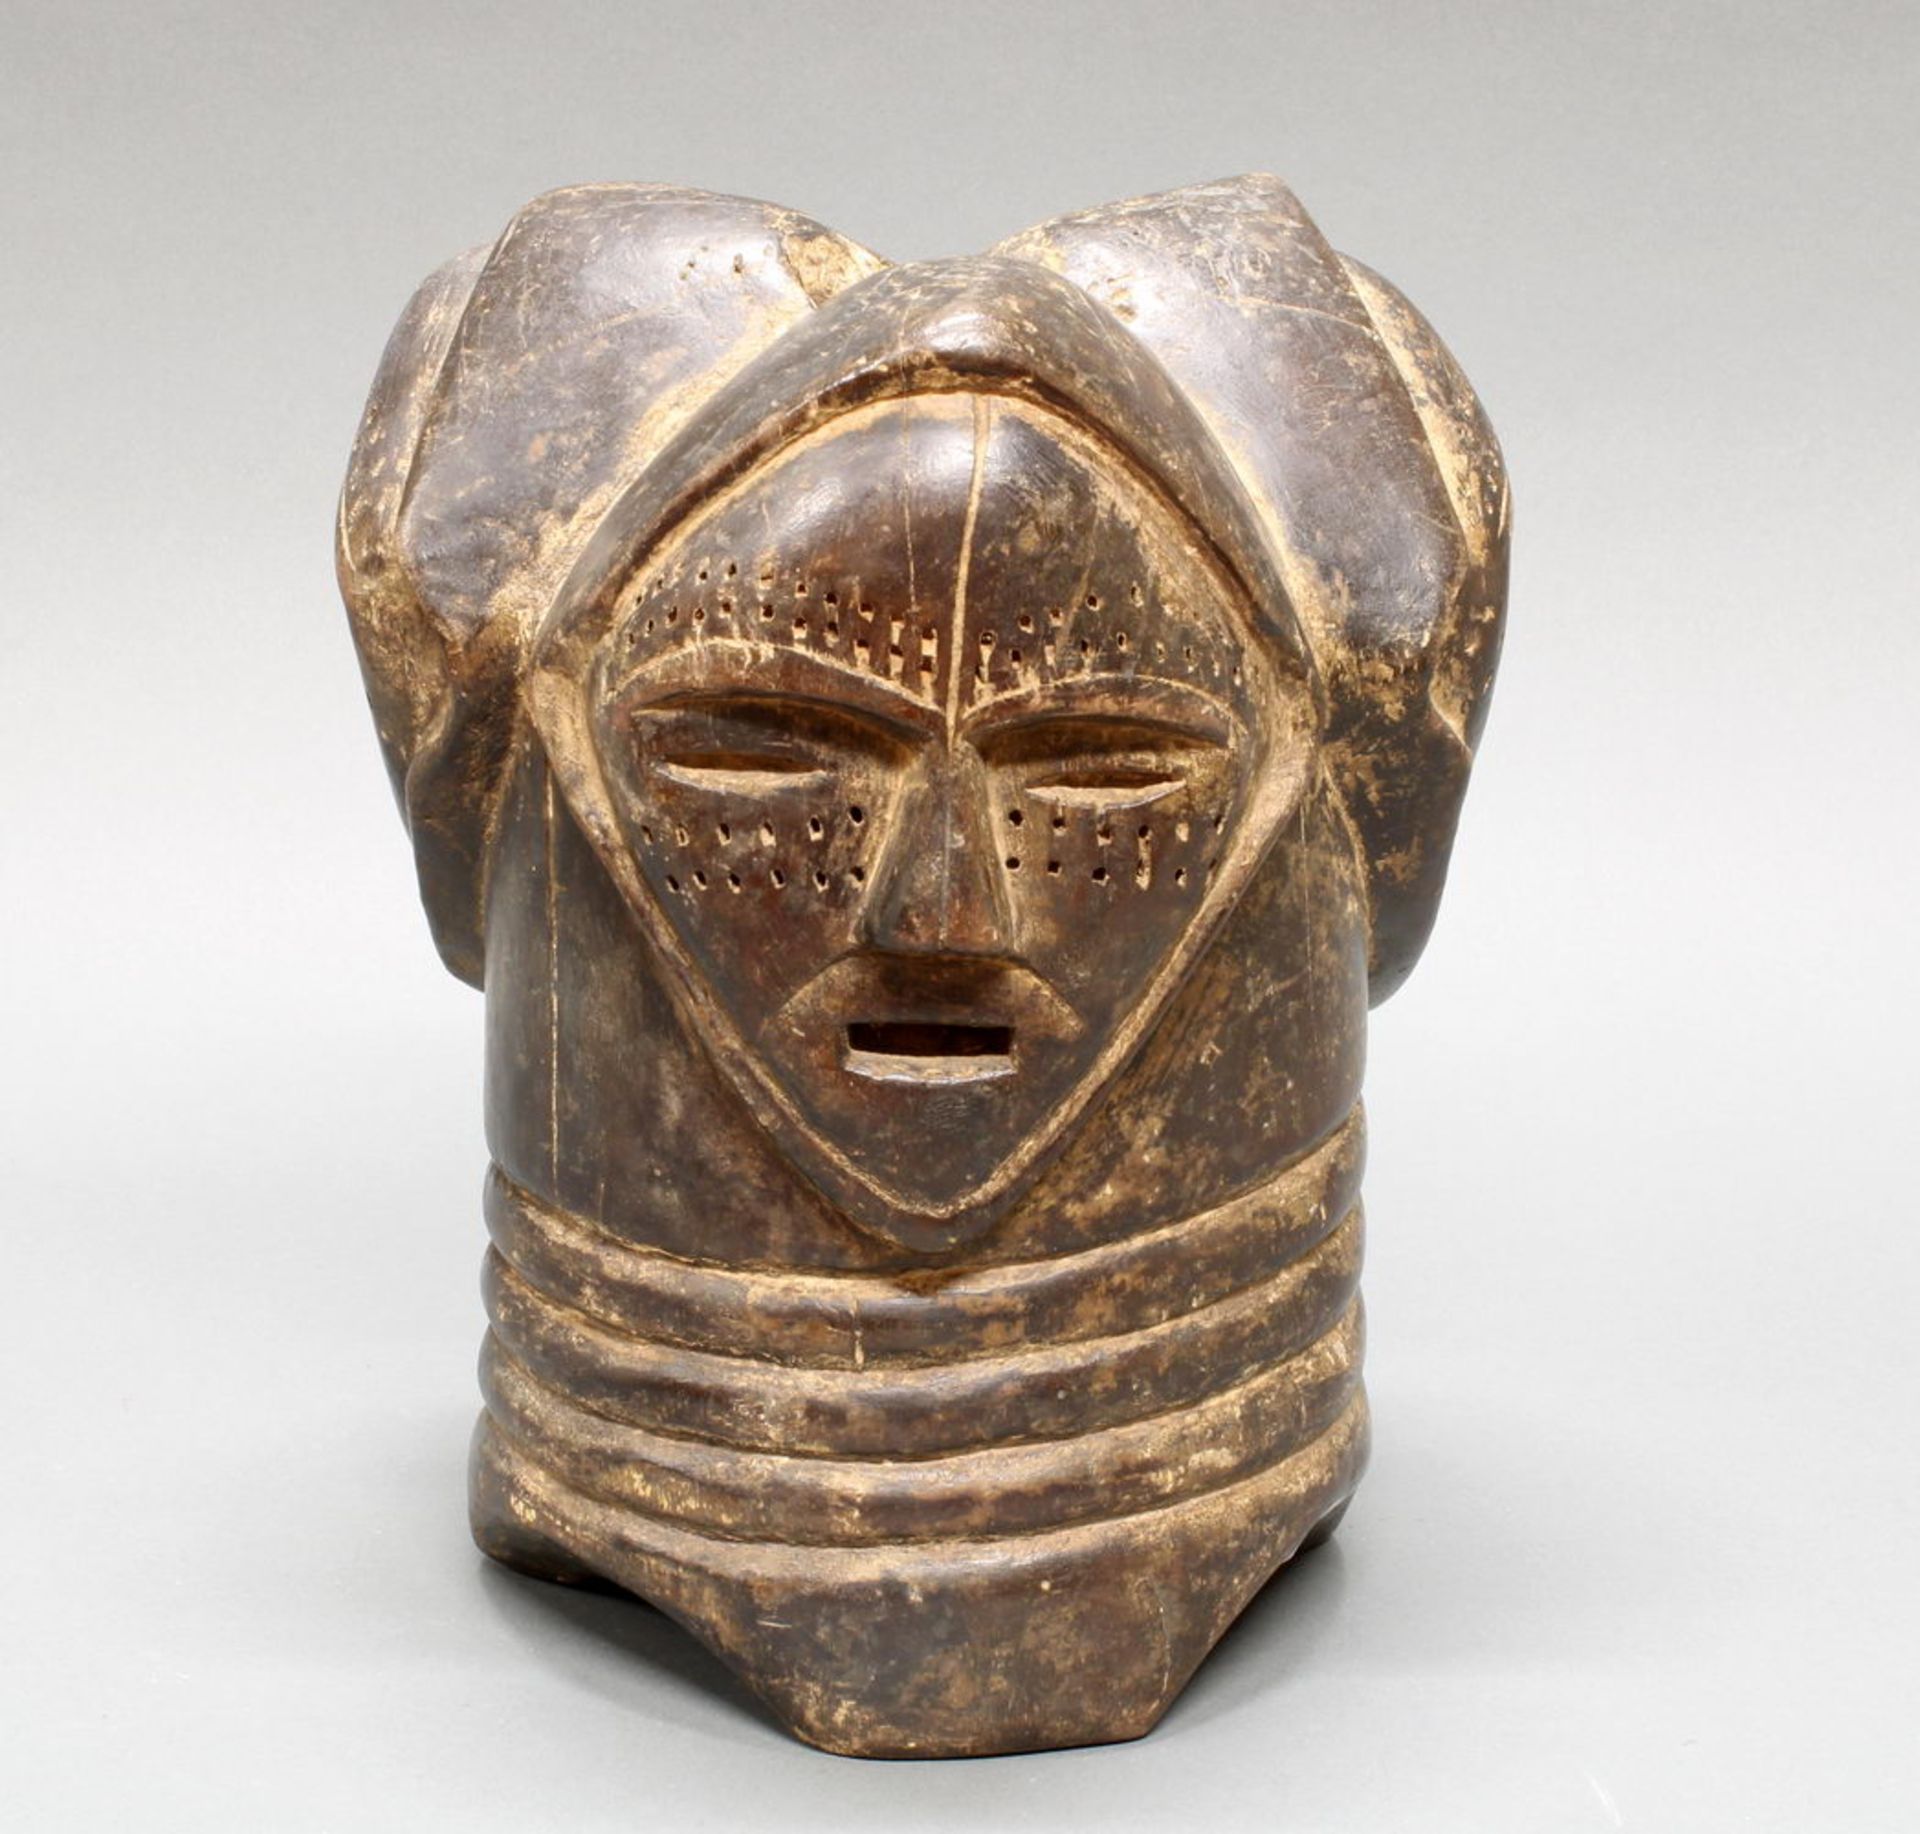 Stülp-Maske, Fang, Gabun, Afrika, Holz, dreiseitig geschnitzte Gesichter, 29 cm hoch. Provenienz: